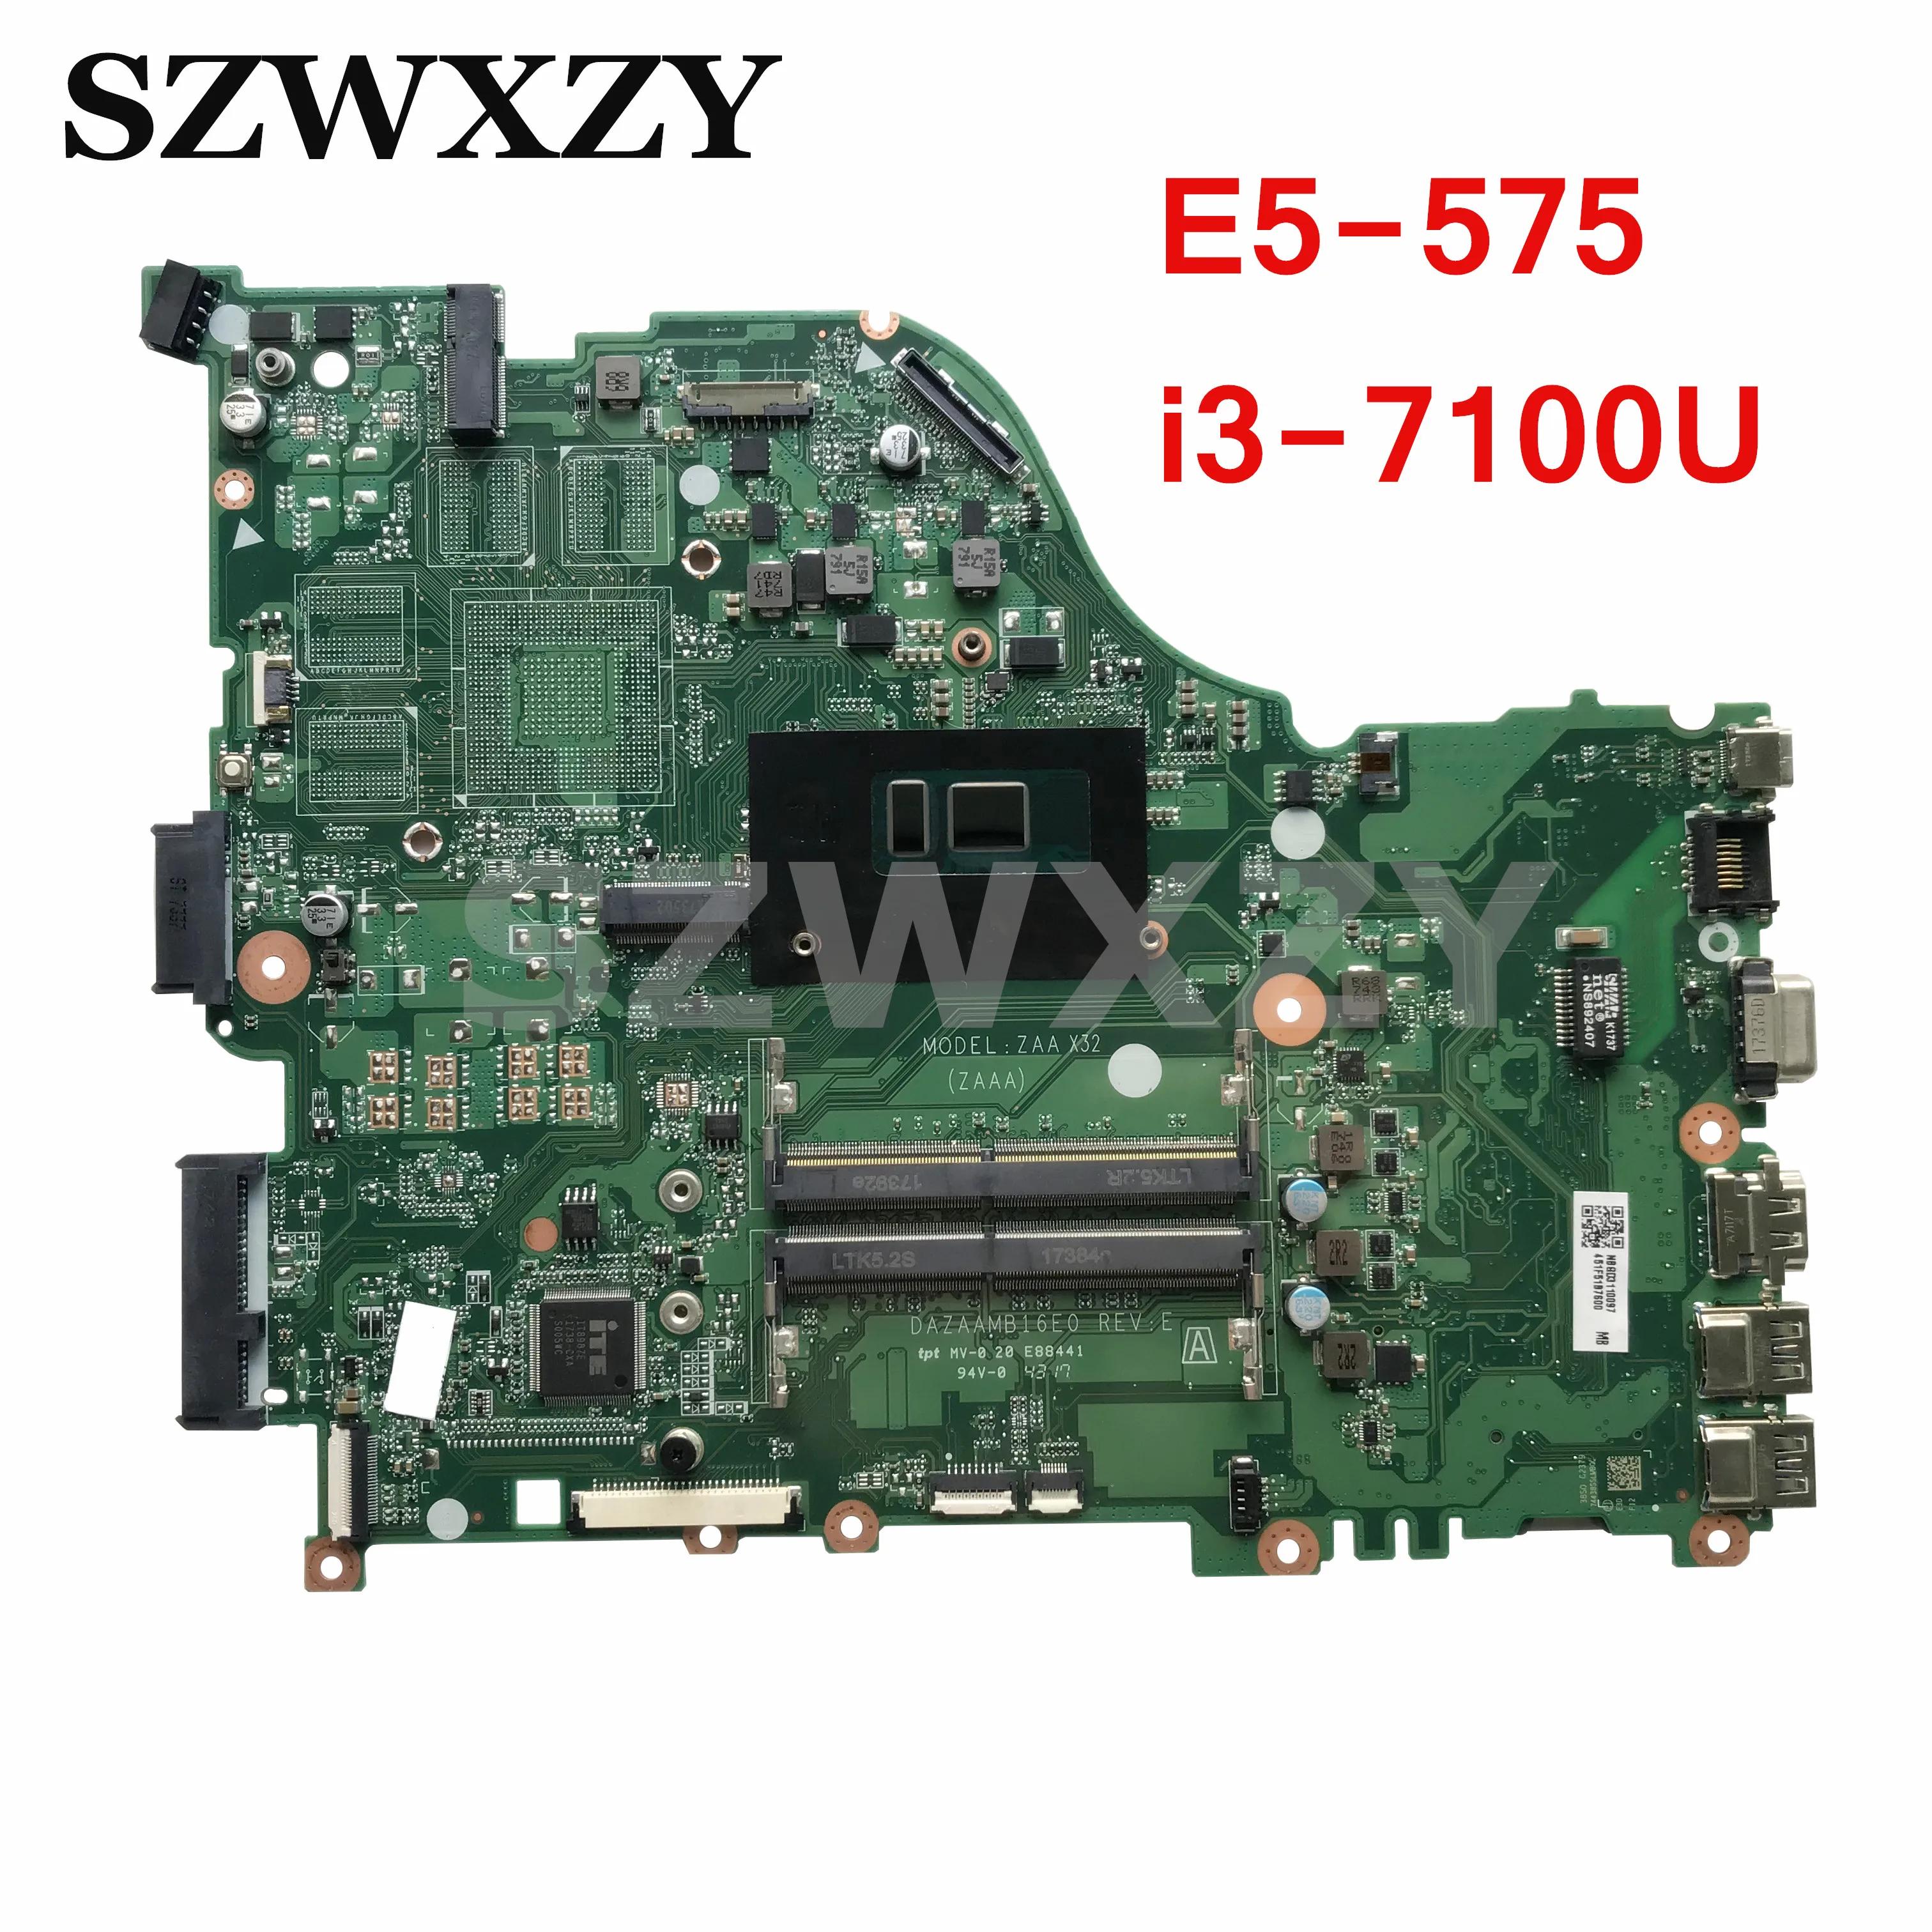 ̼ ƽ̾ E5-575 ƮϿ  , NBGD311009, DAZAAMB16E0, i3-7100U CPU 